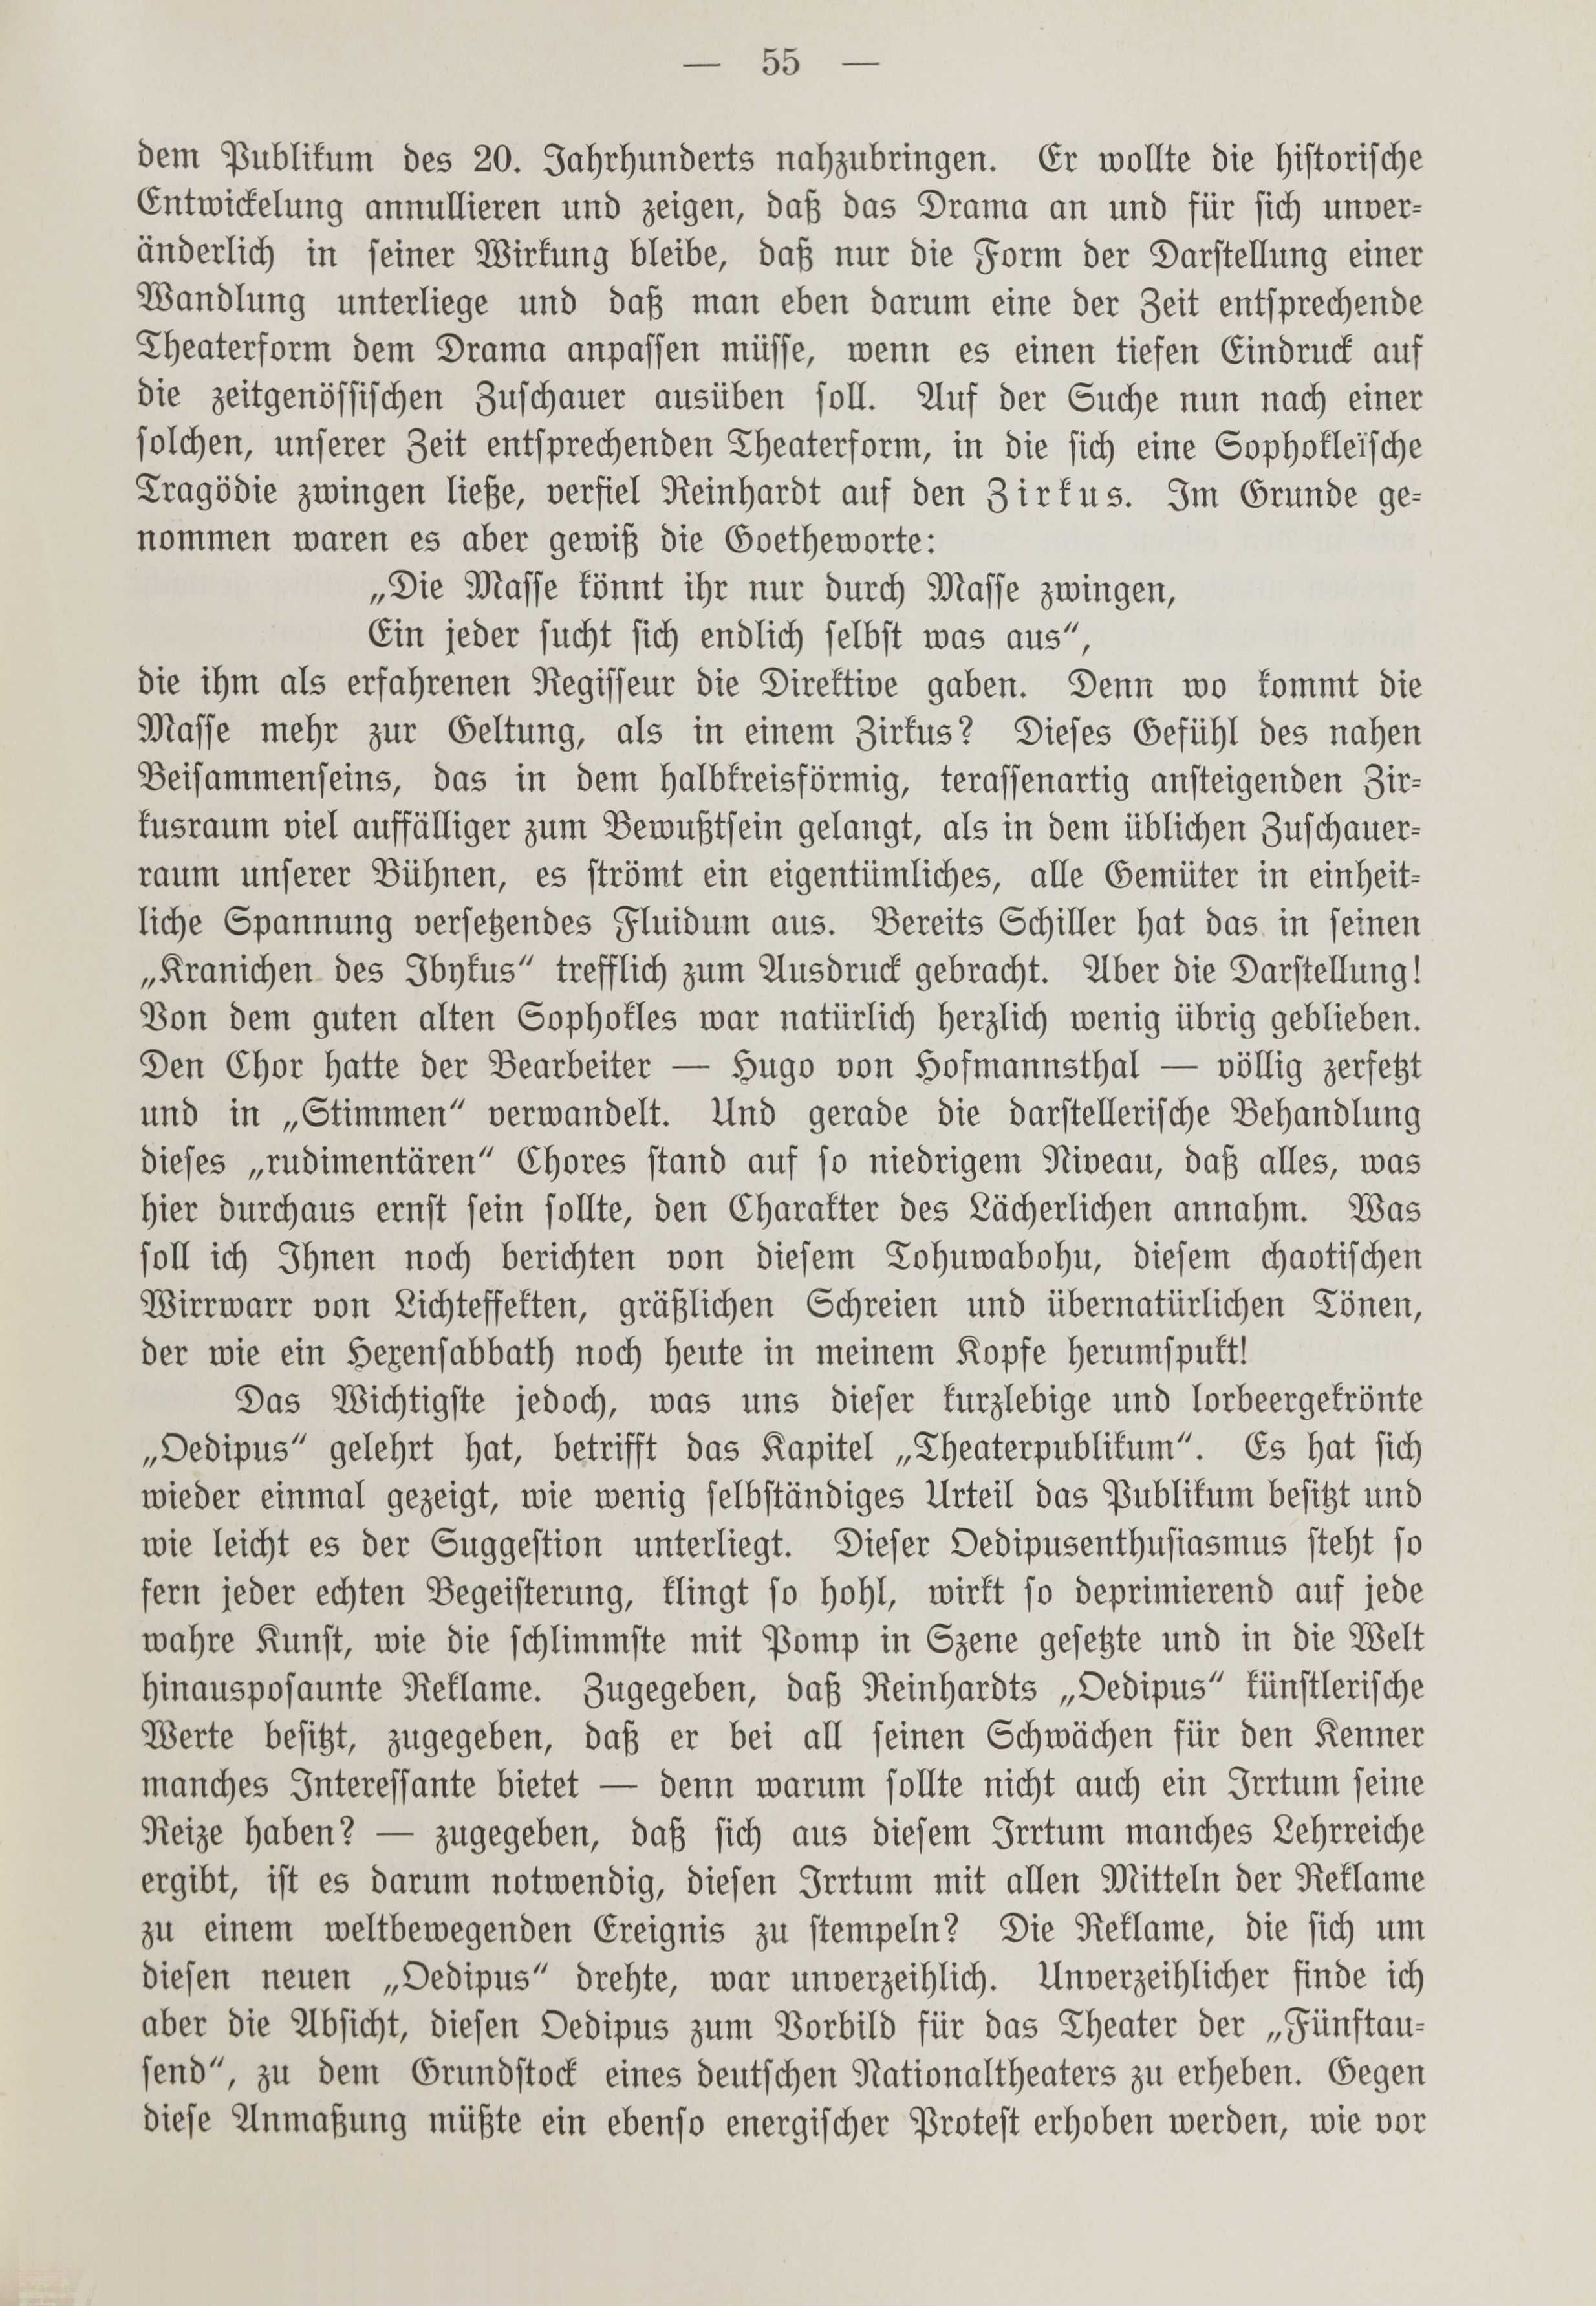 Deutsche Monatsschrift für Russland [1] (1912) | 62. (55) Main body of text